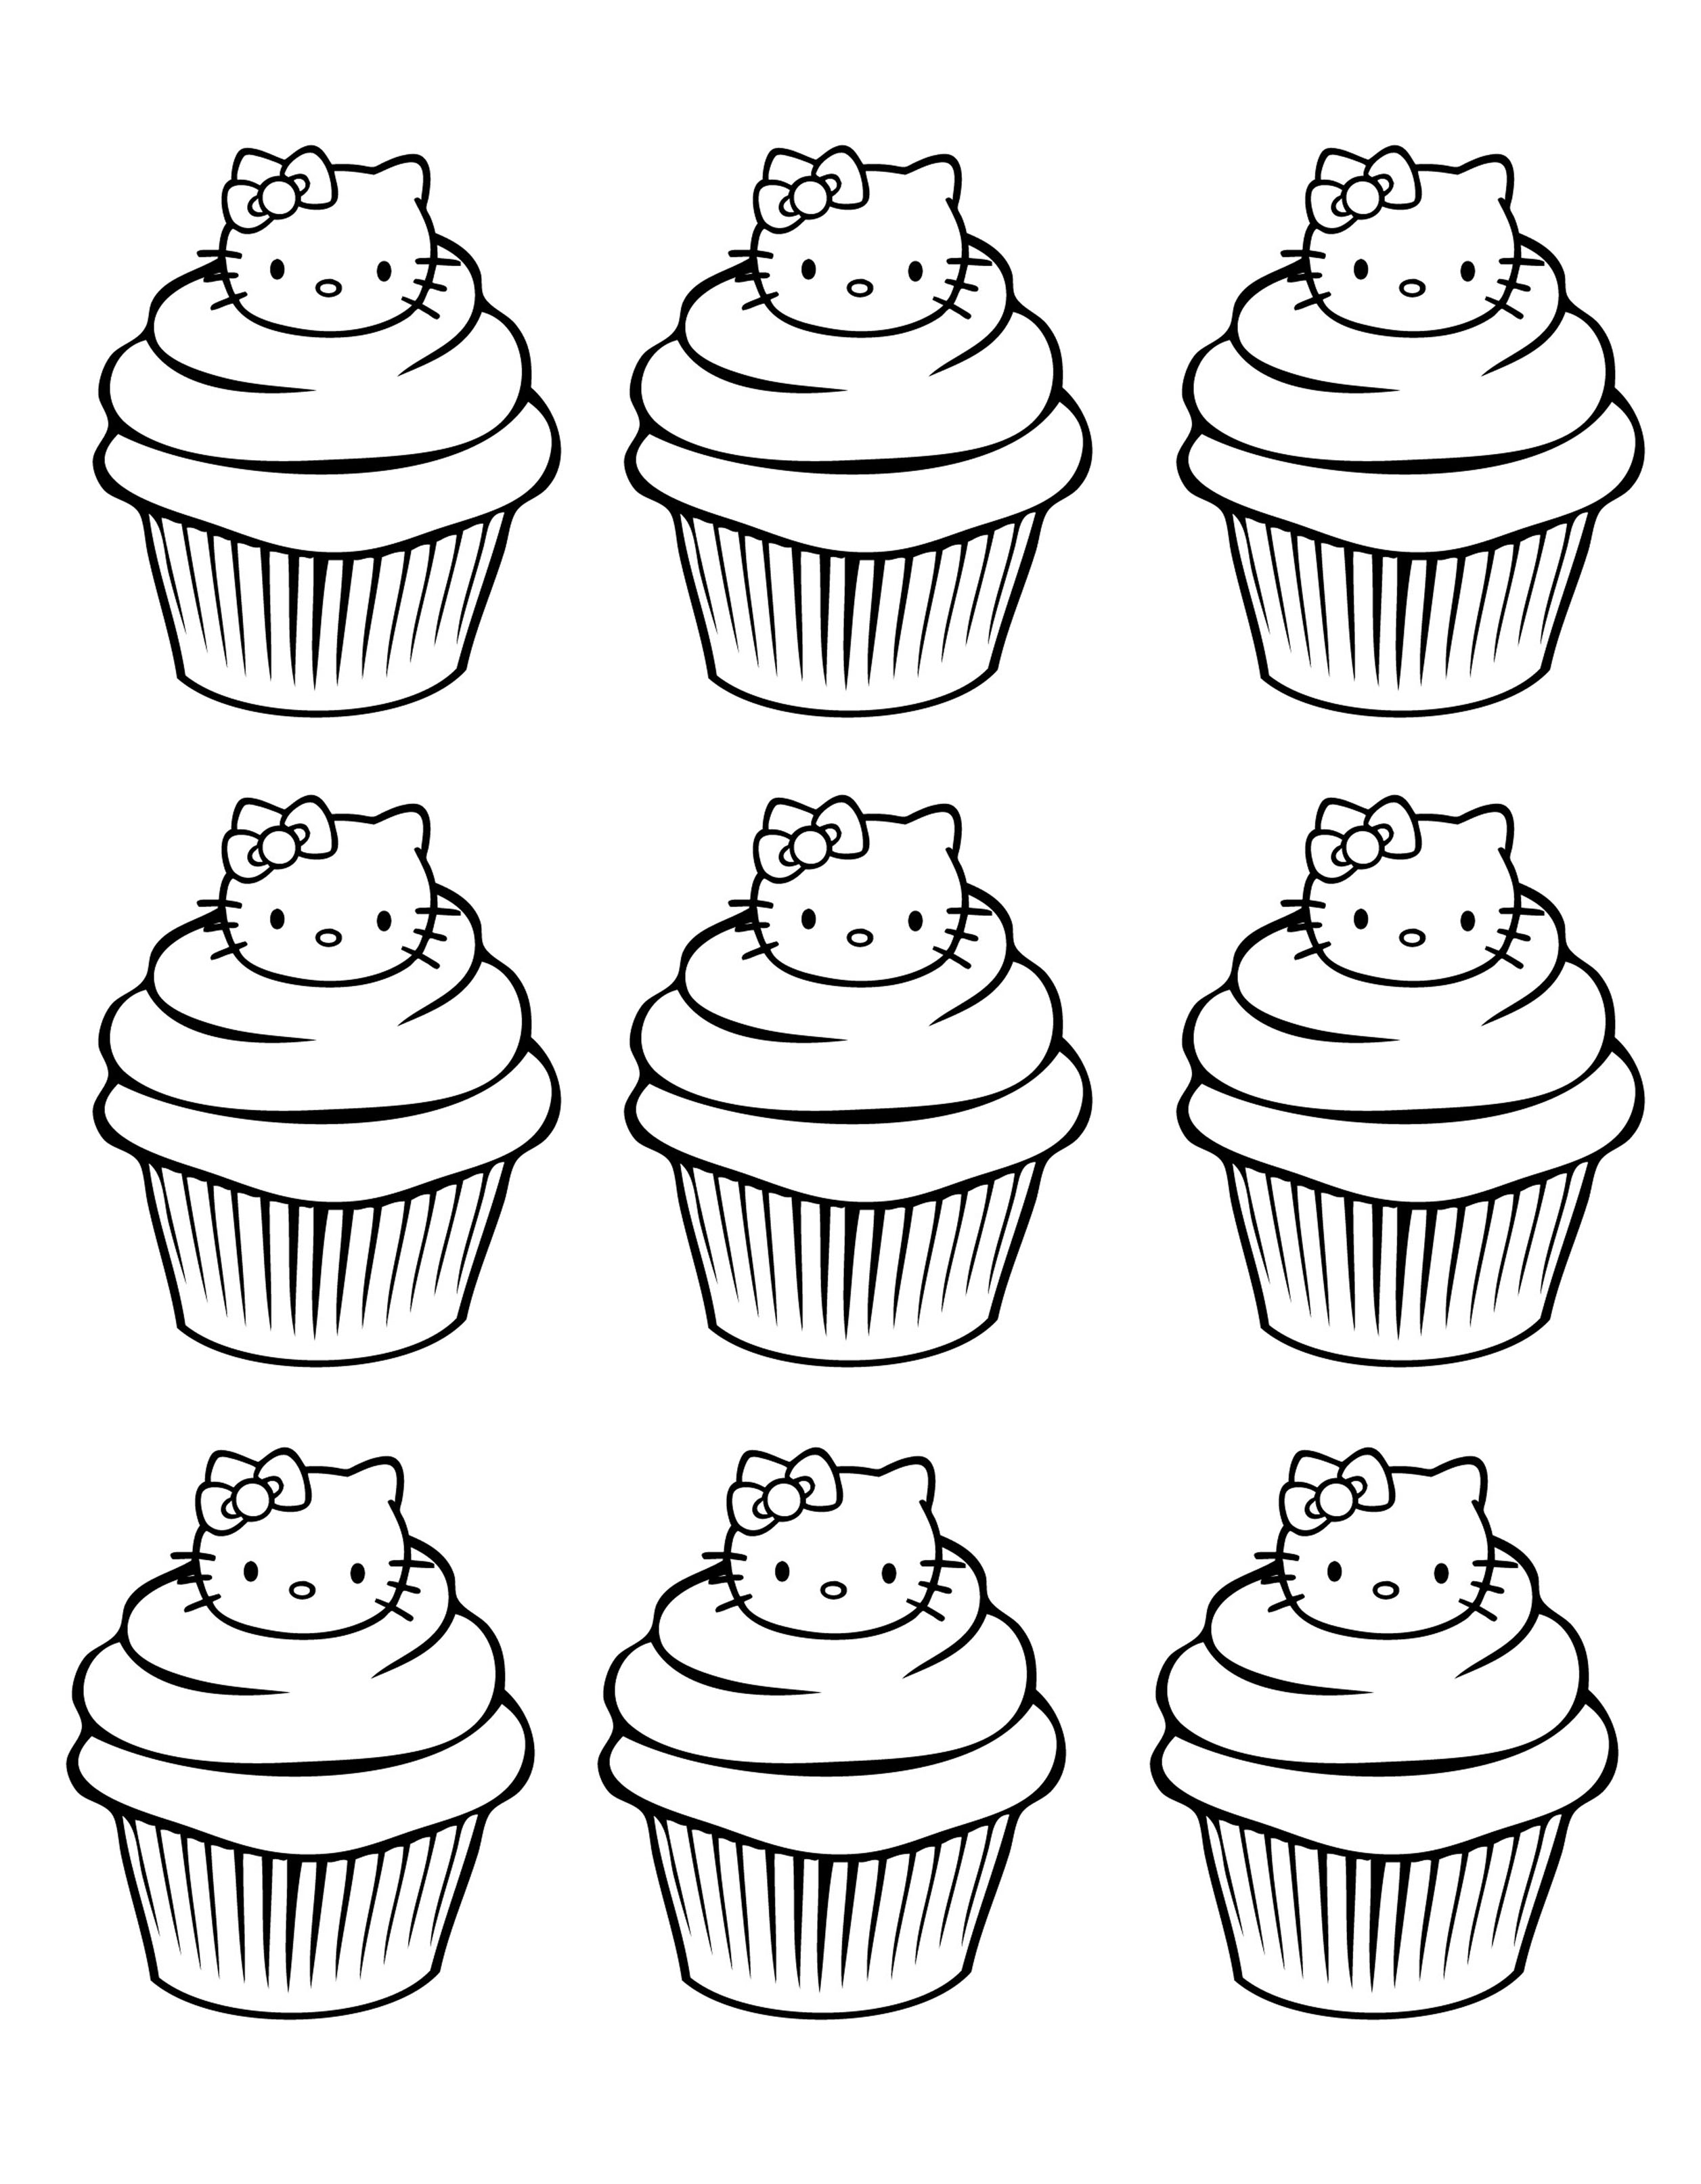 Desenhos de Hello Kitty para colorir, jogos de pintar e imprimir